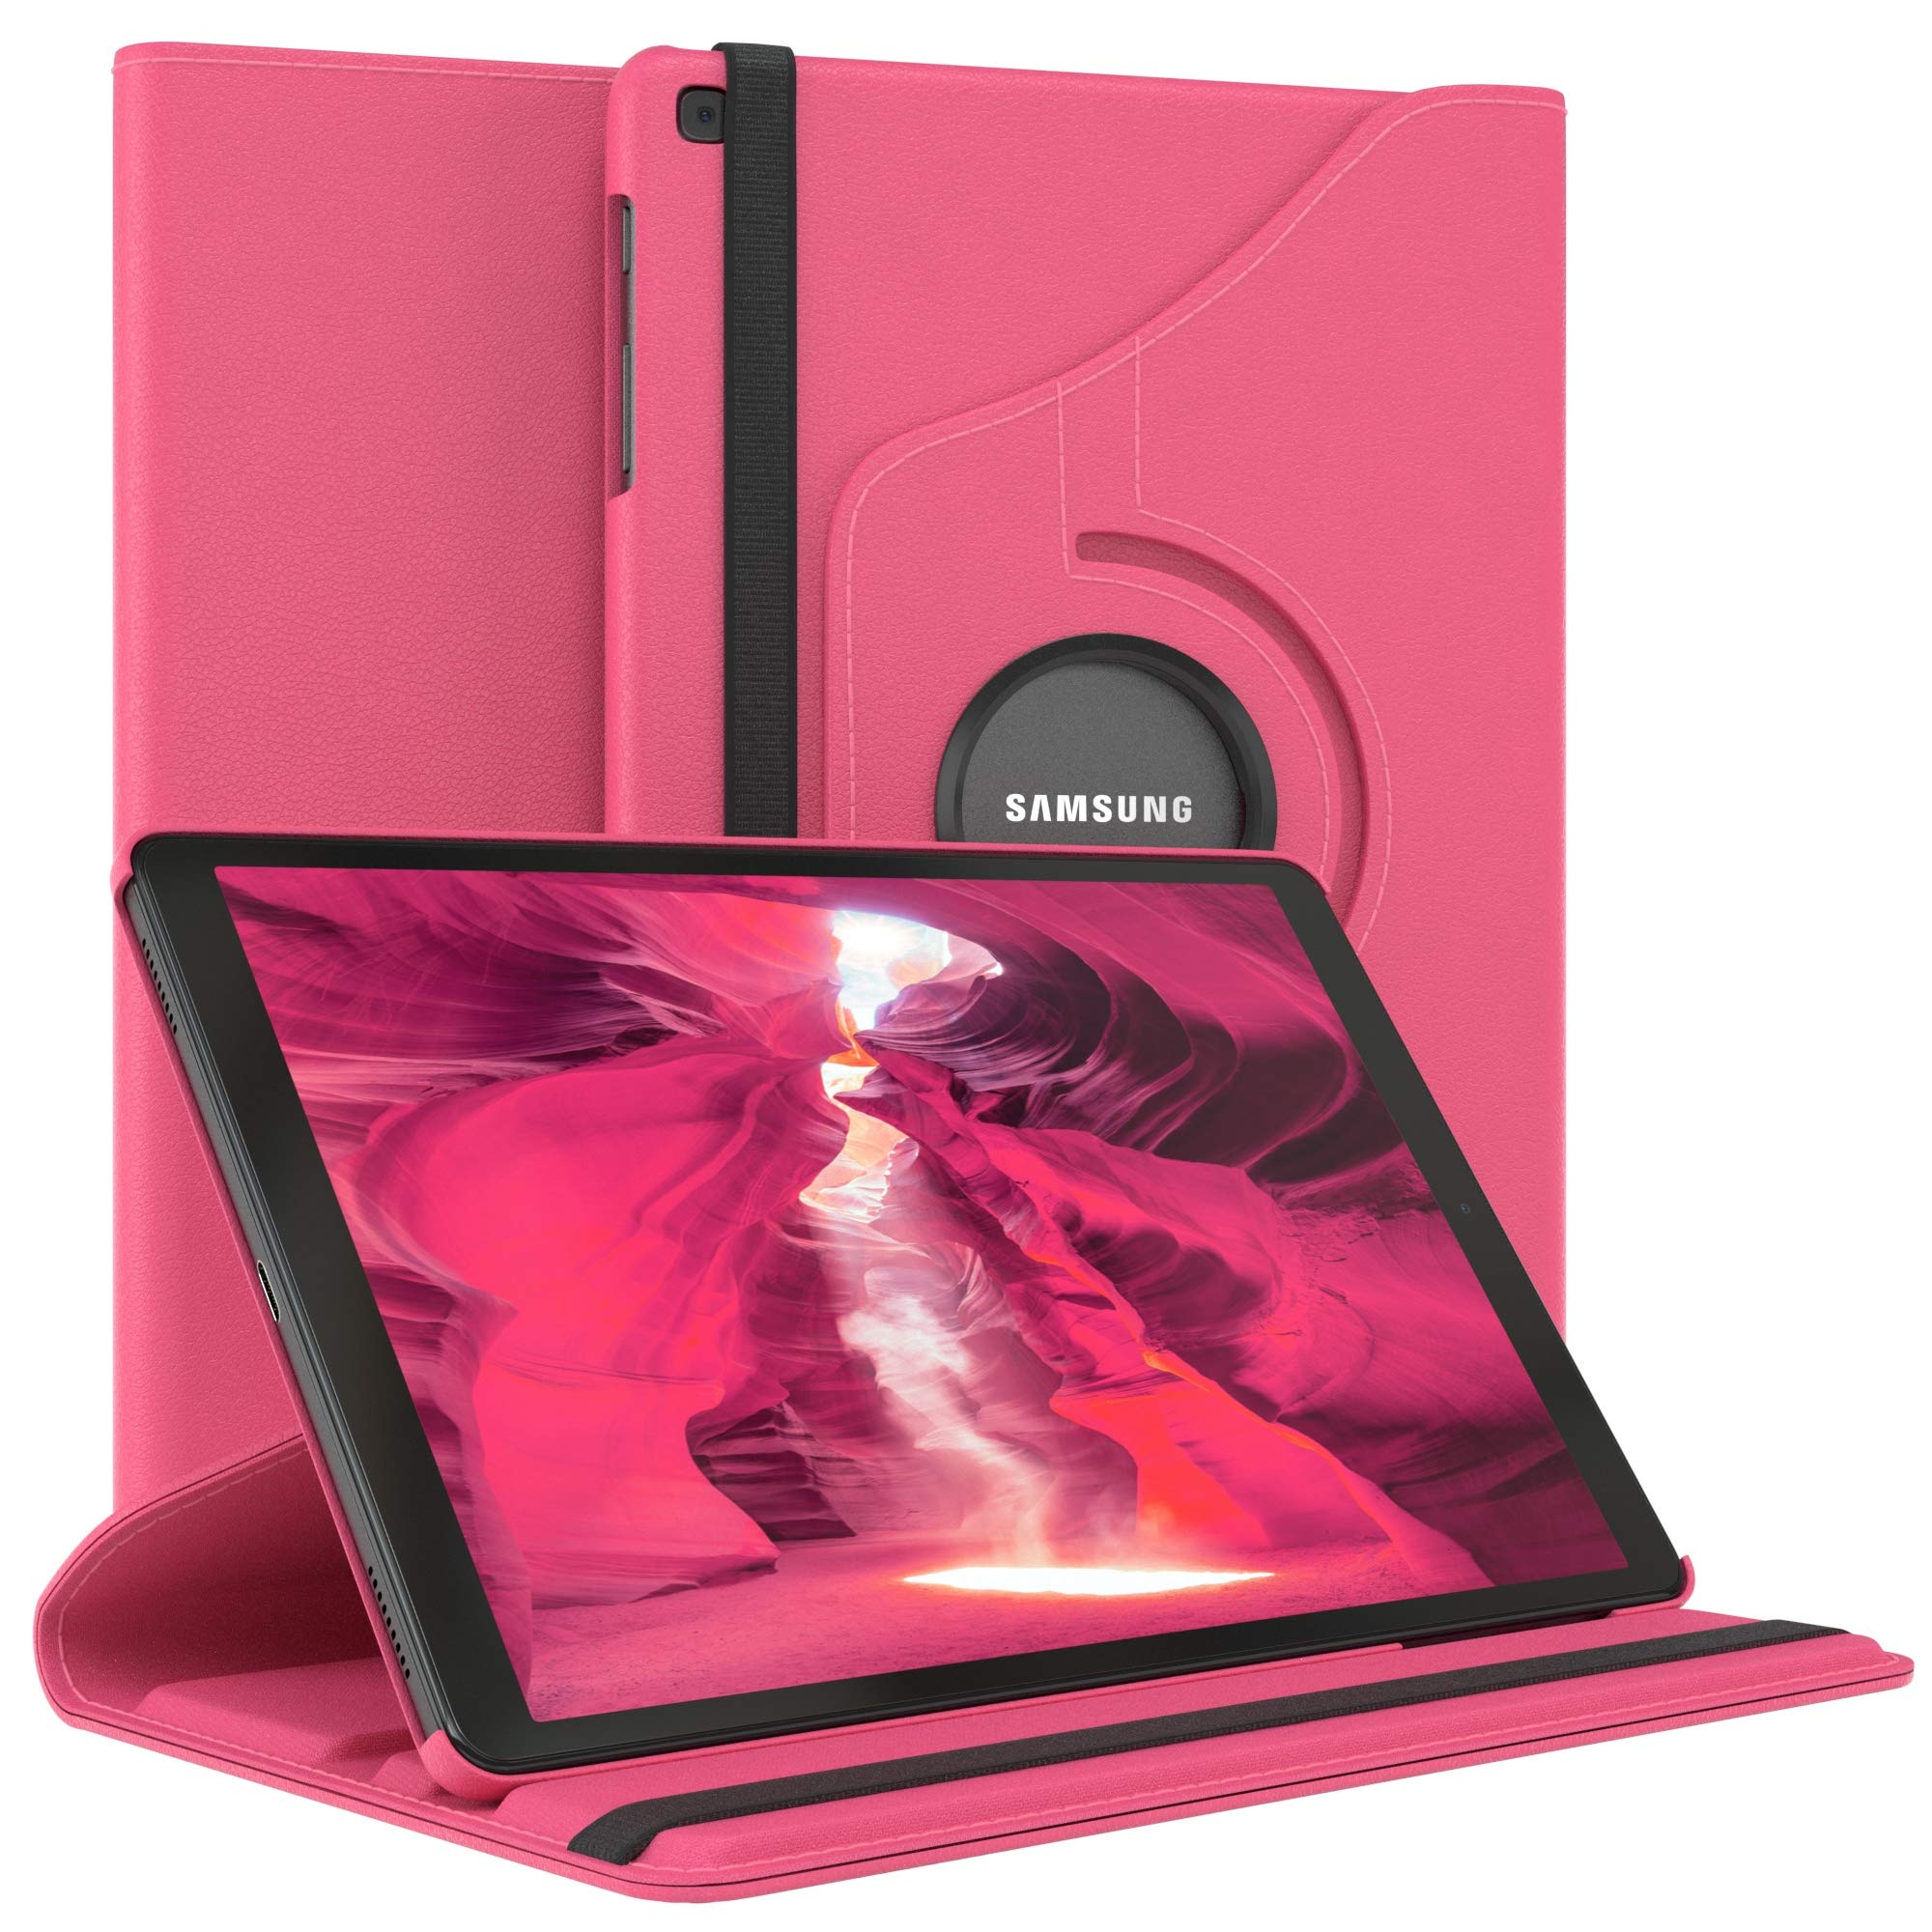 EAZY CASE - Tablet Hülle für Samsung Galaxy Tab A 10.1 (2019) Schutzhülle 10.1 Zoll Smart Cover Tablet Case Rotationcase zum Aufstellen Klapphülle 360° drehbar mit Standfunktion Tasche Kunstleder Pink